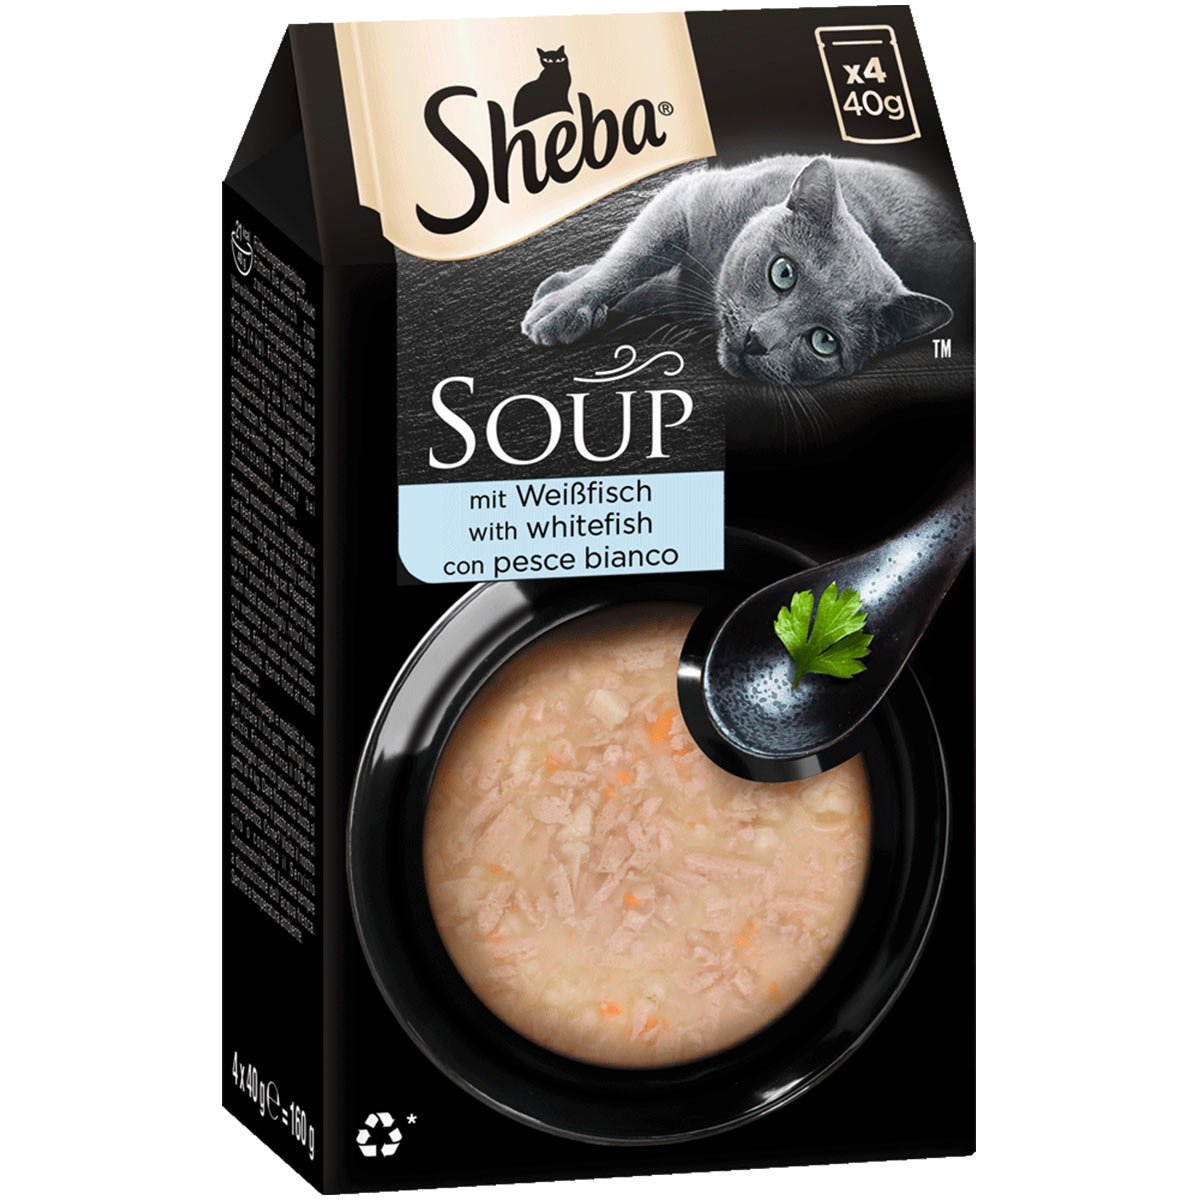 SHEBA Soup mit Weißfisch 32x40g von Sheba